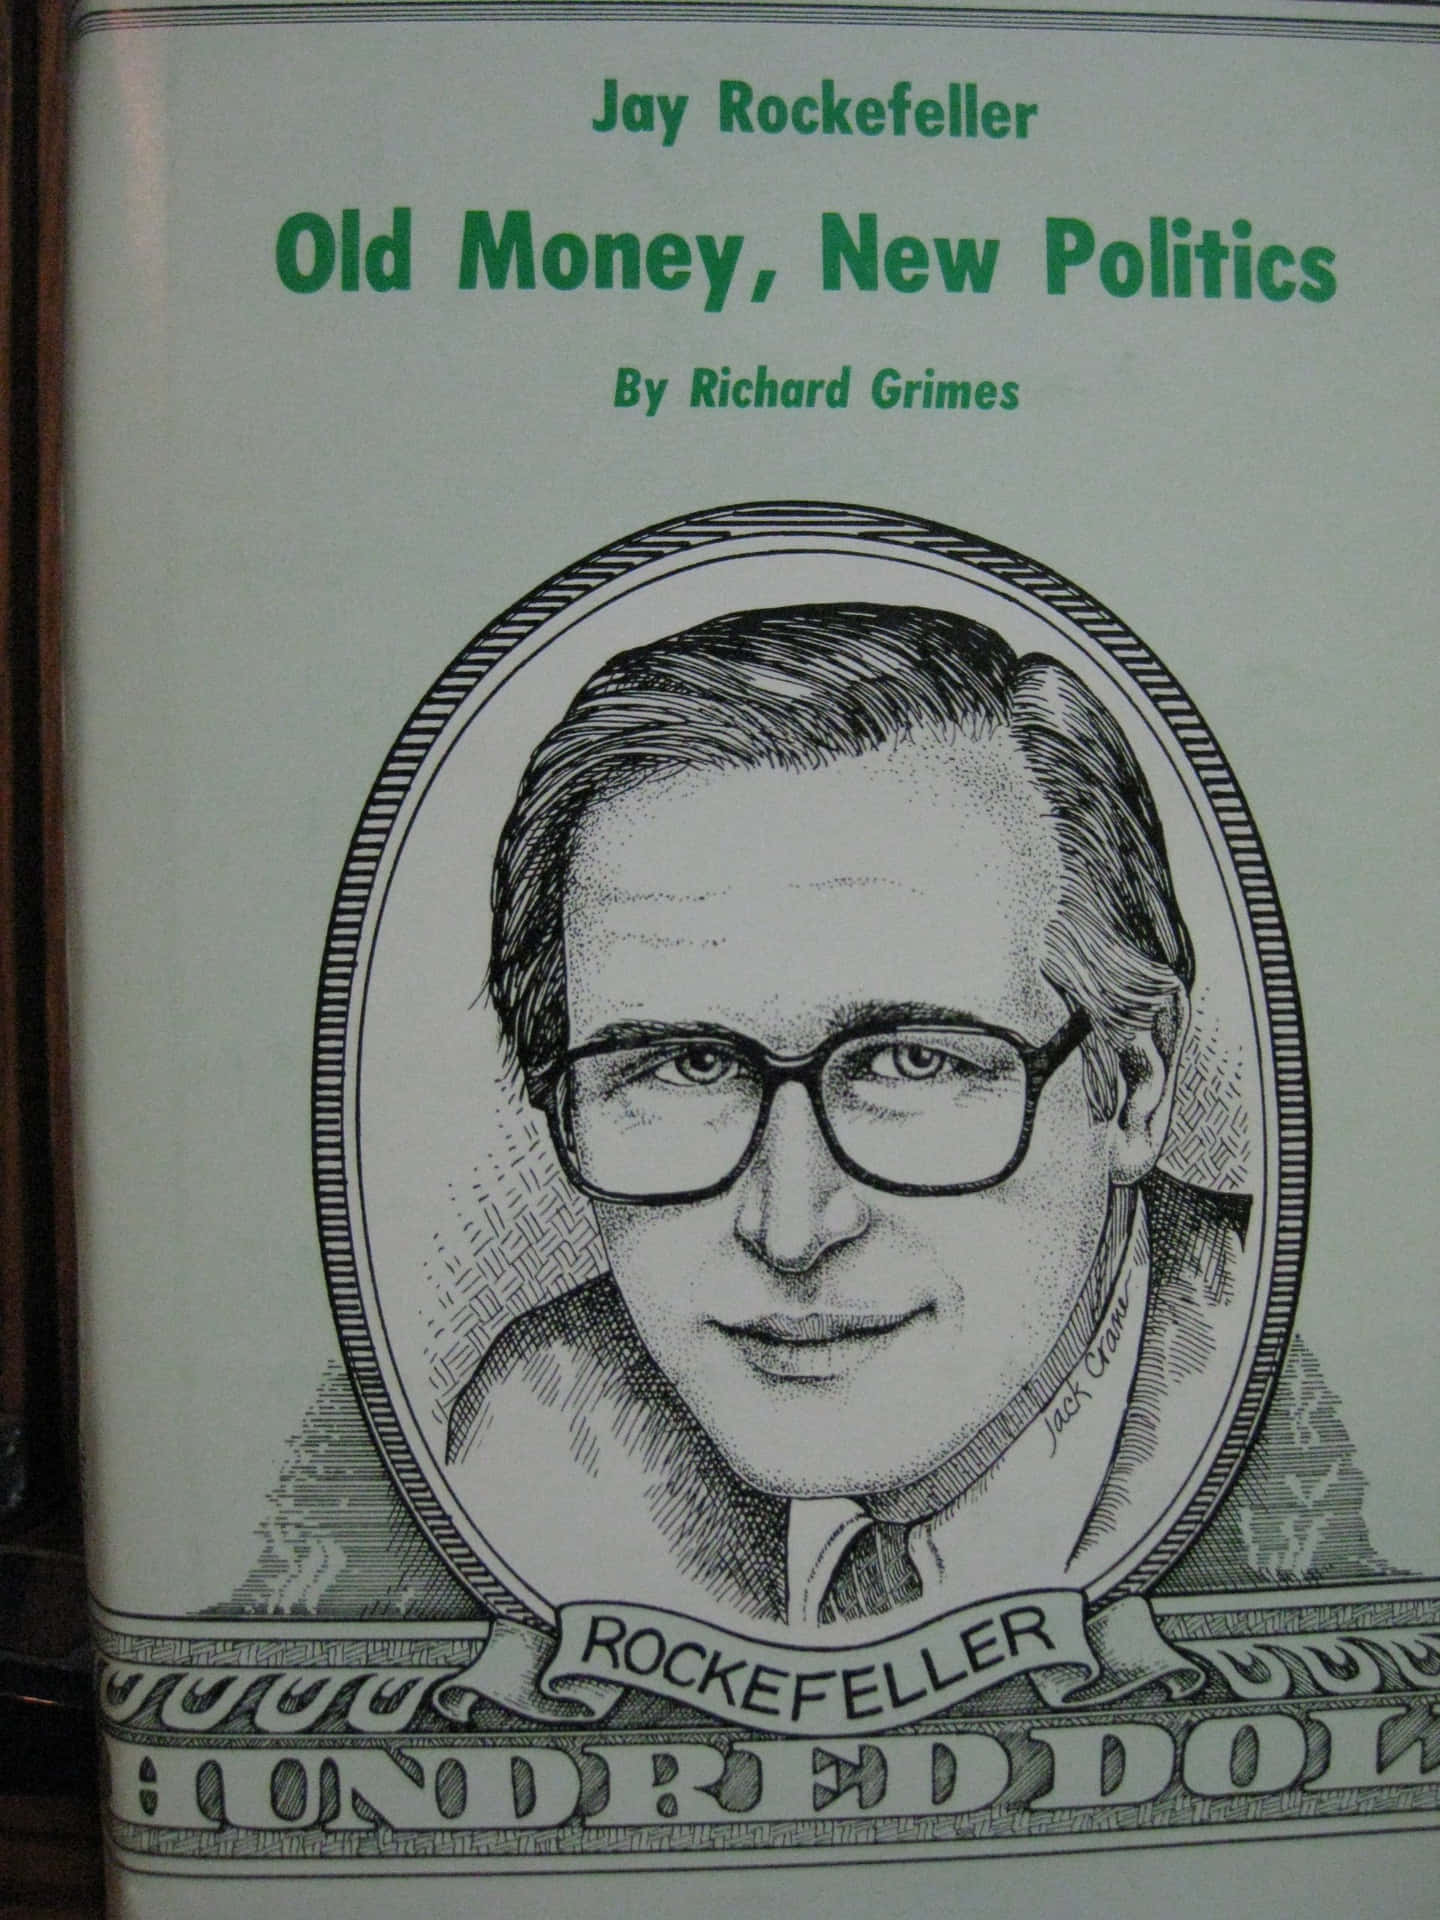 Jay Rockefeller Old Money New Politics Wallpaper